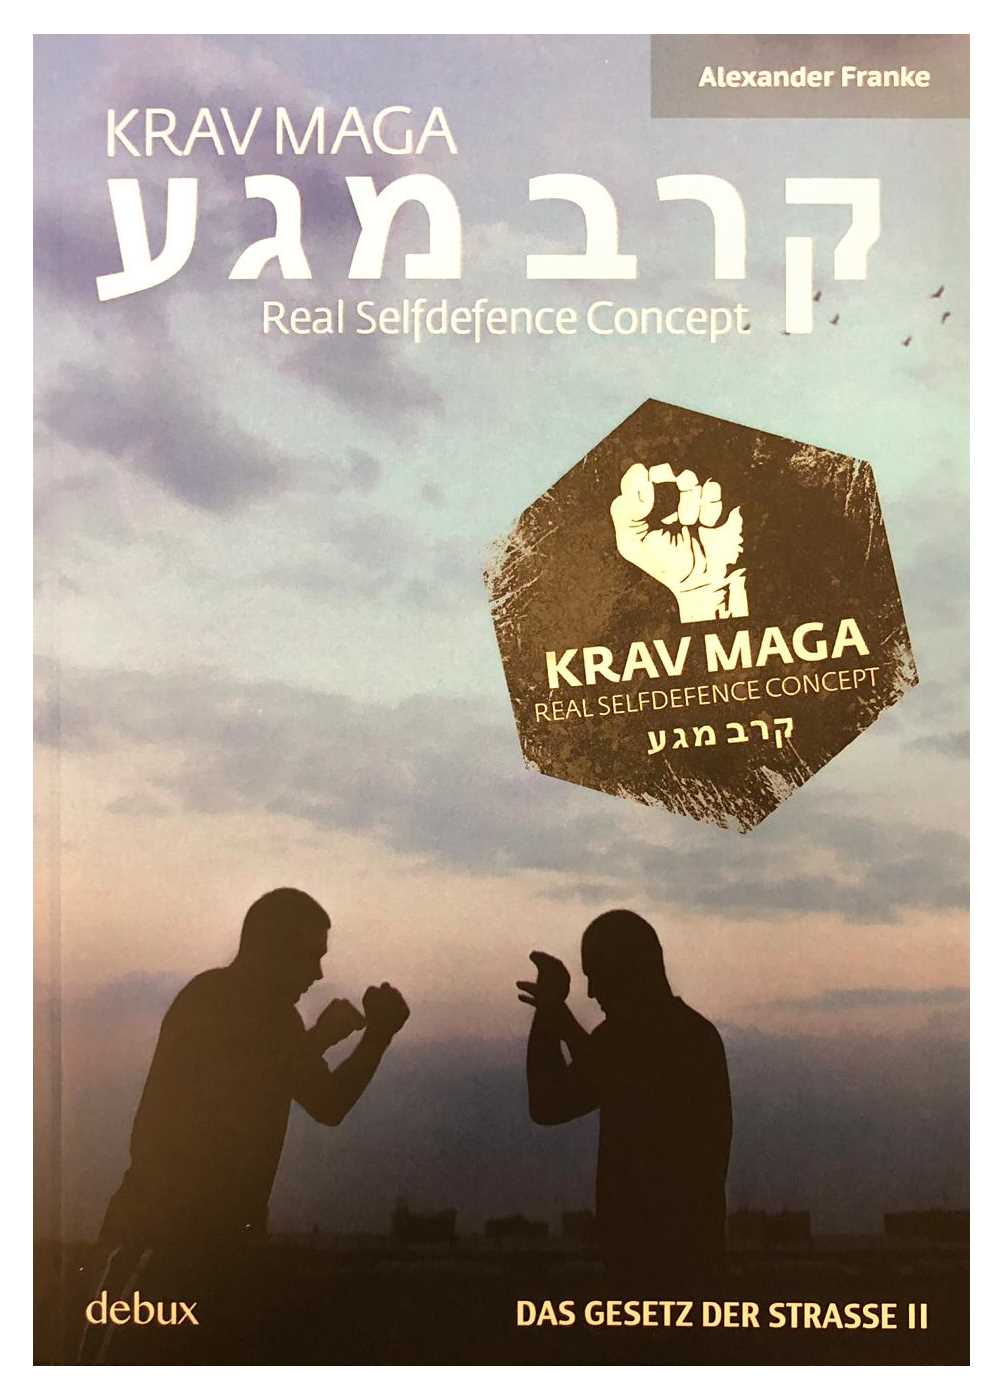 Krav Maga - Real Selfdefence Concept